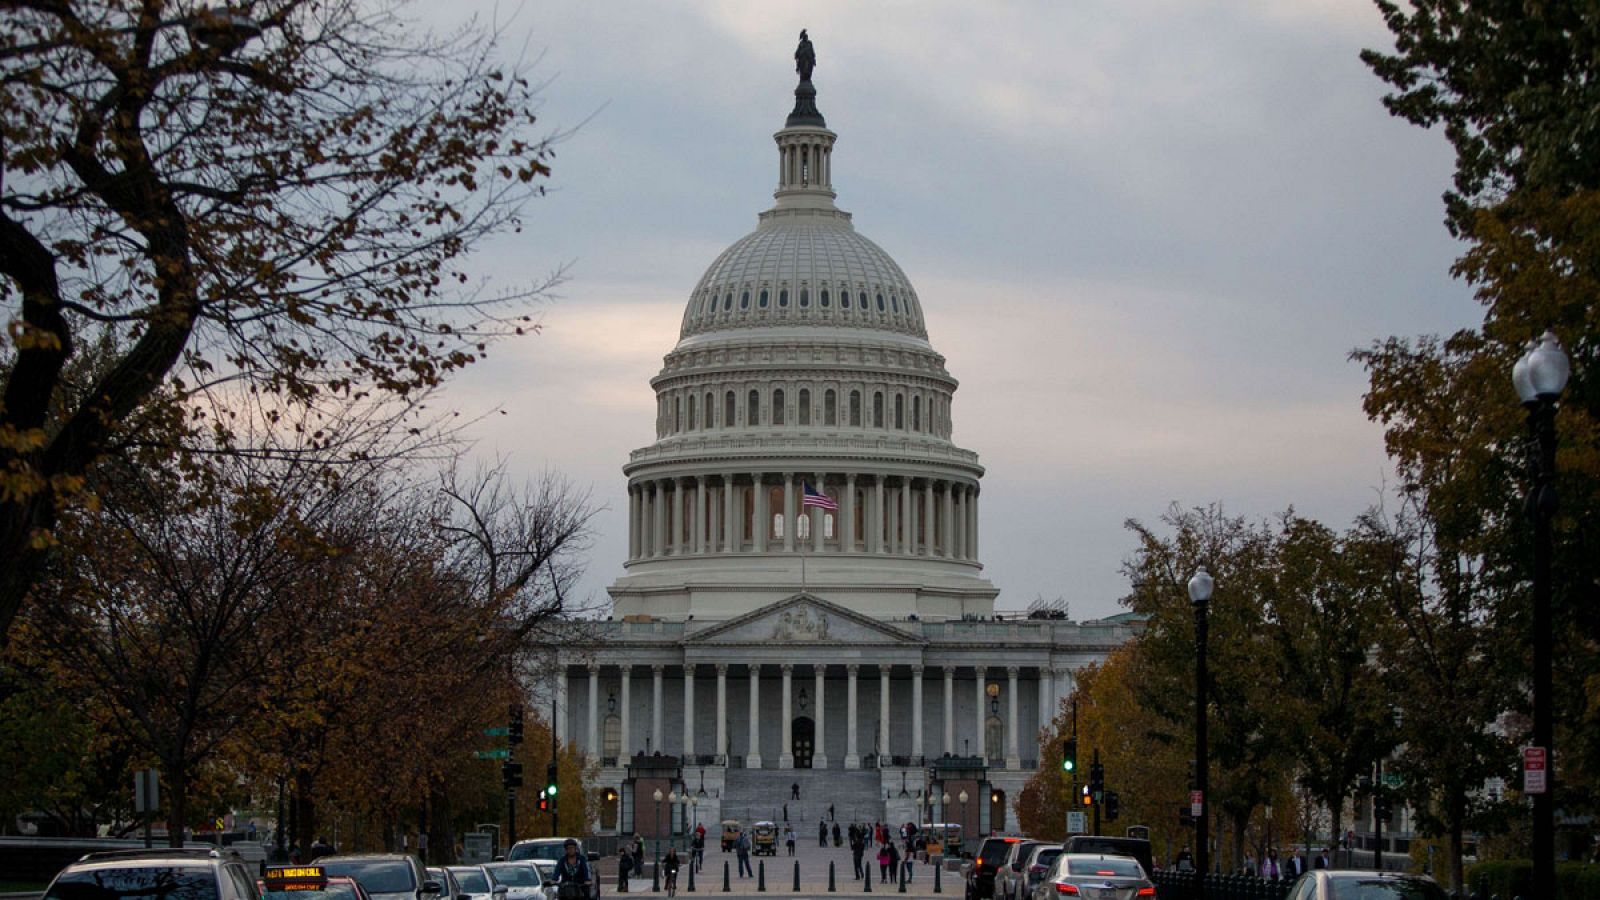 Imagen del Capitolio en Washington, el edificio que alberga las dos cámaras del Congreso de los Estados Unidos.